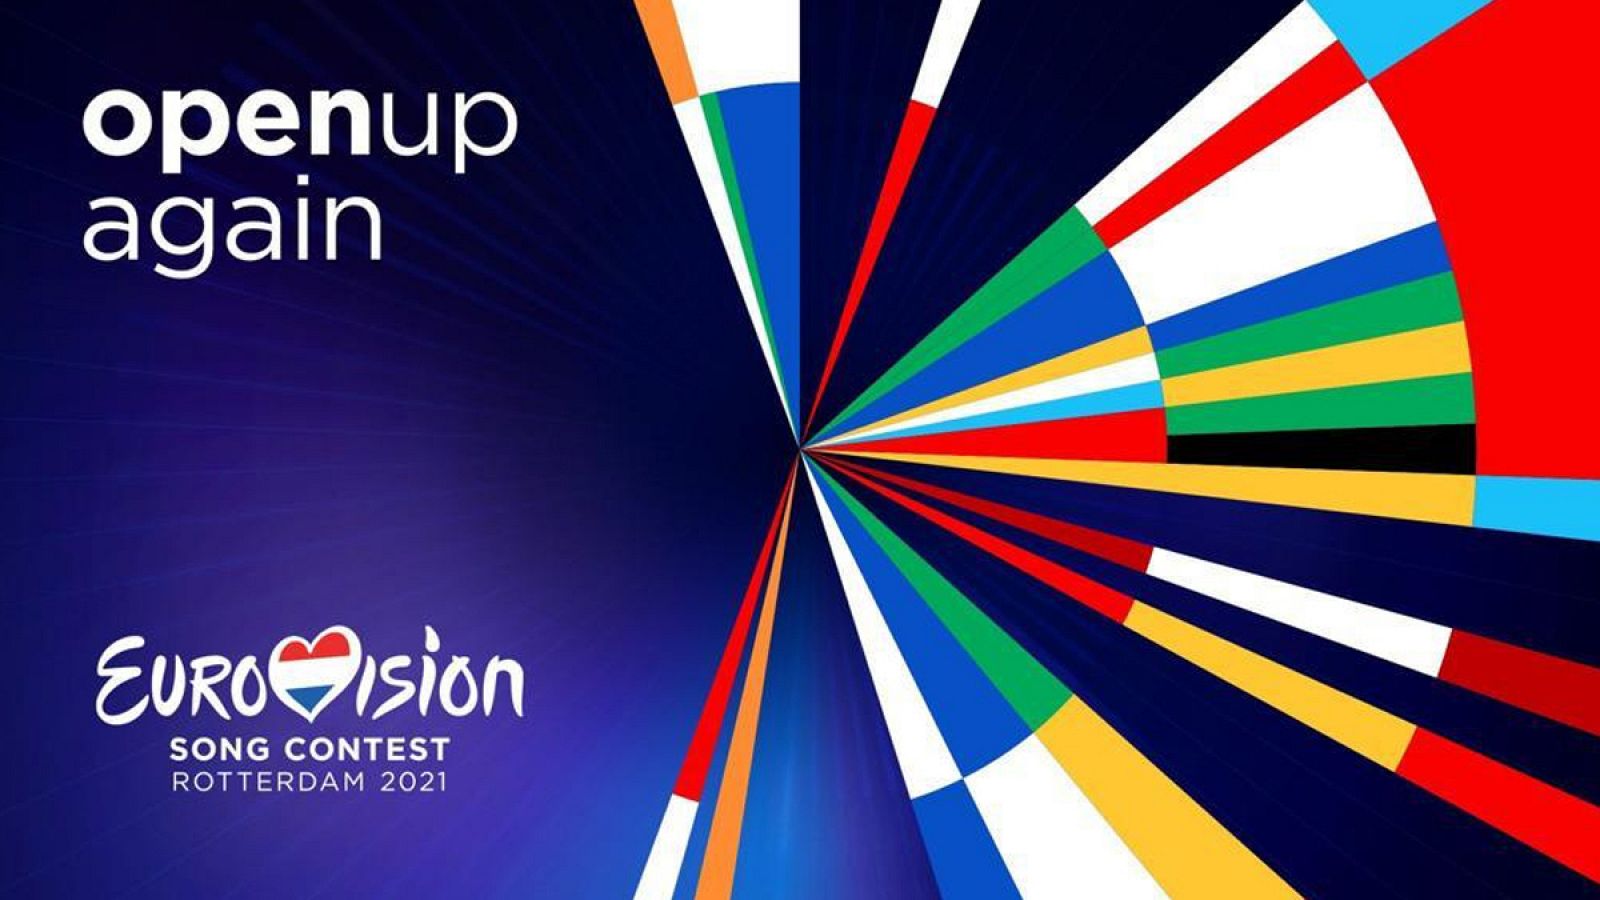 Róterdam será la ciudad anfitriona de la 65ª edición del Festival de Eurovisión. 